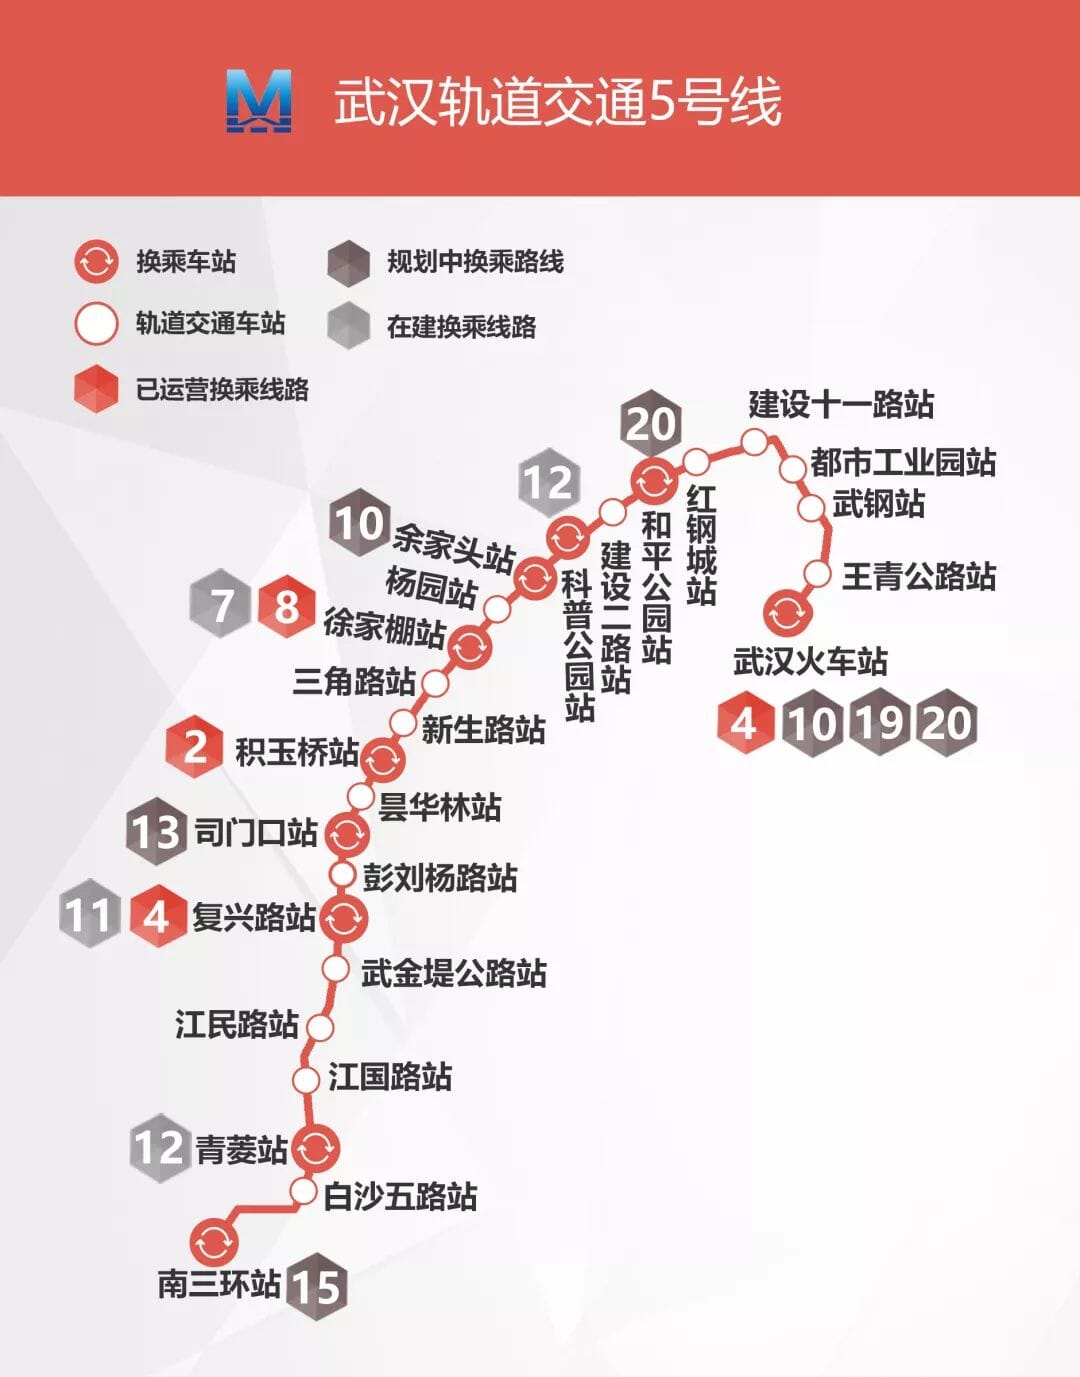 武汉地铁5号线首个盾构区间徐家棚站至杨园站区间,经过122天日夜施工